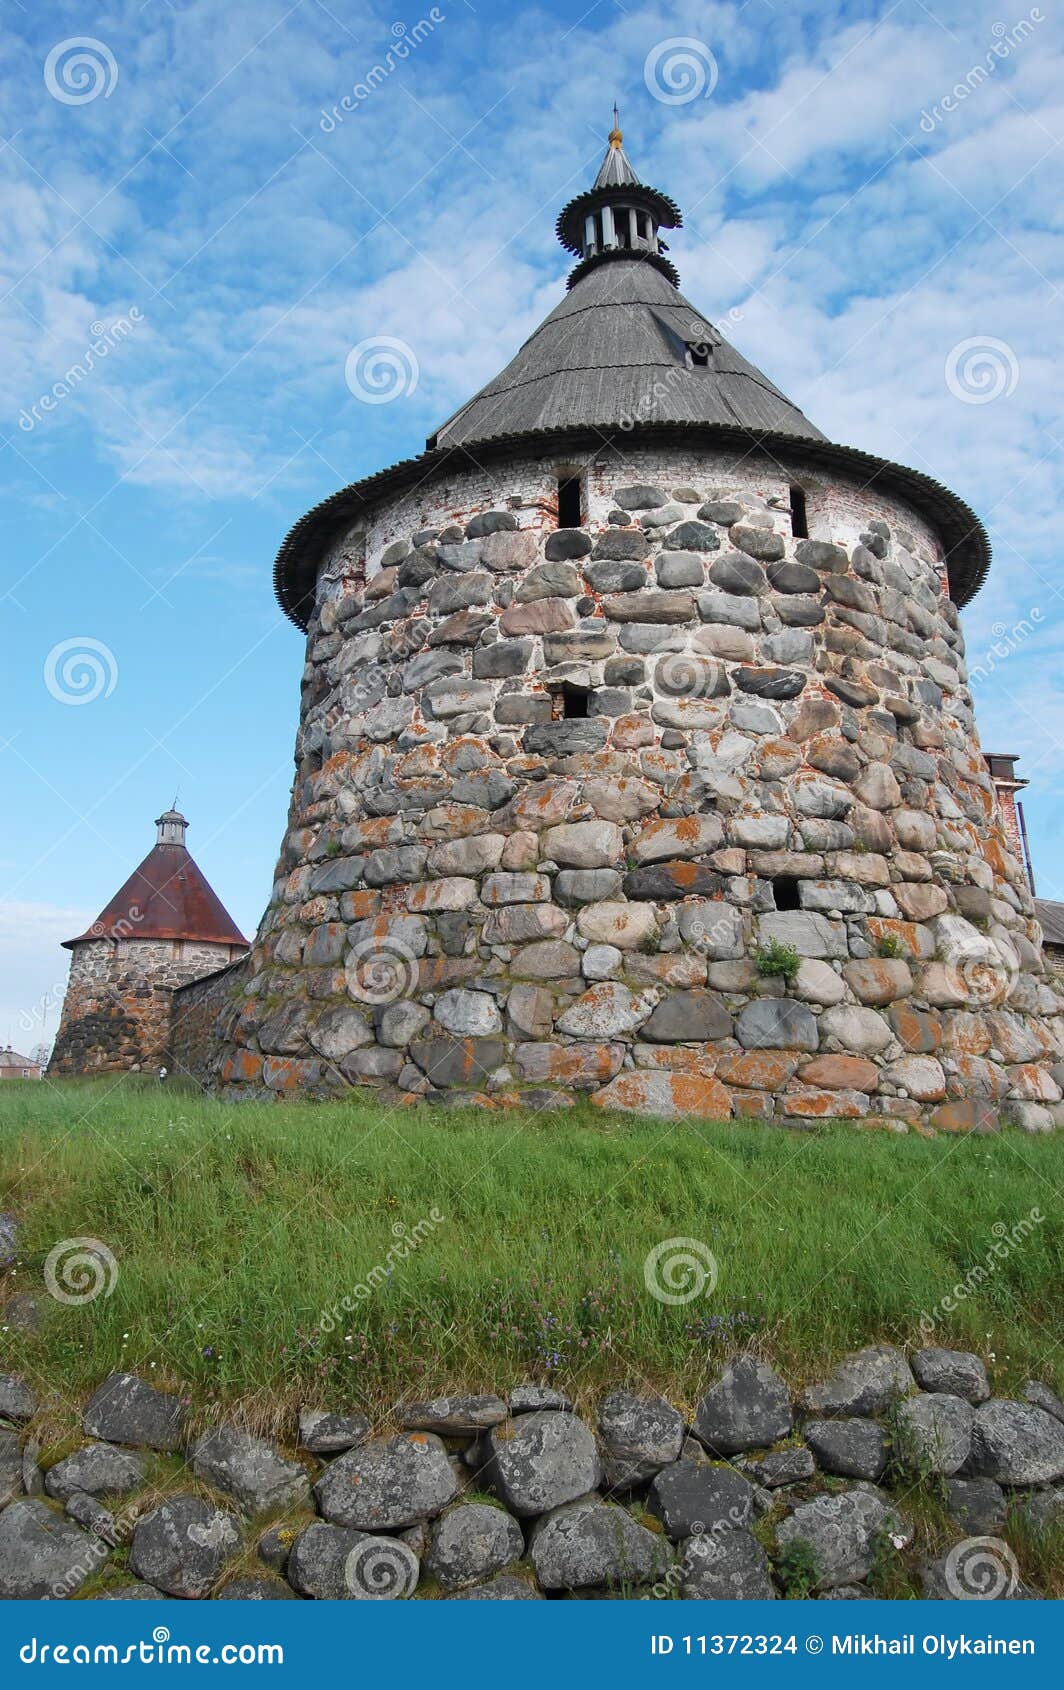 Isola solovetsky. Bianco tradizionale della vecchia della Russia dell'isola della fortezza del mare torretta solovetsky russa del nord medioevale di stile